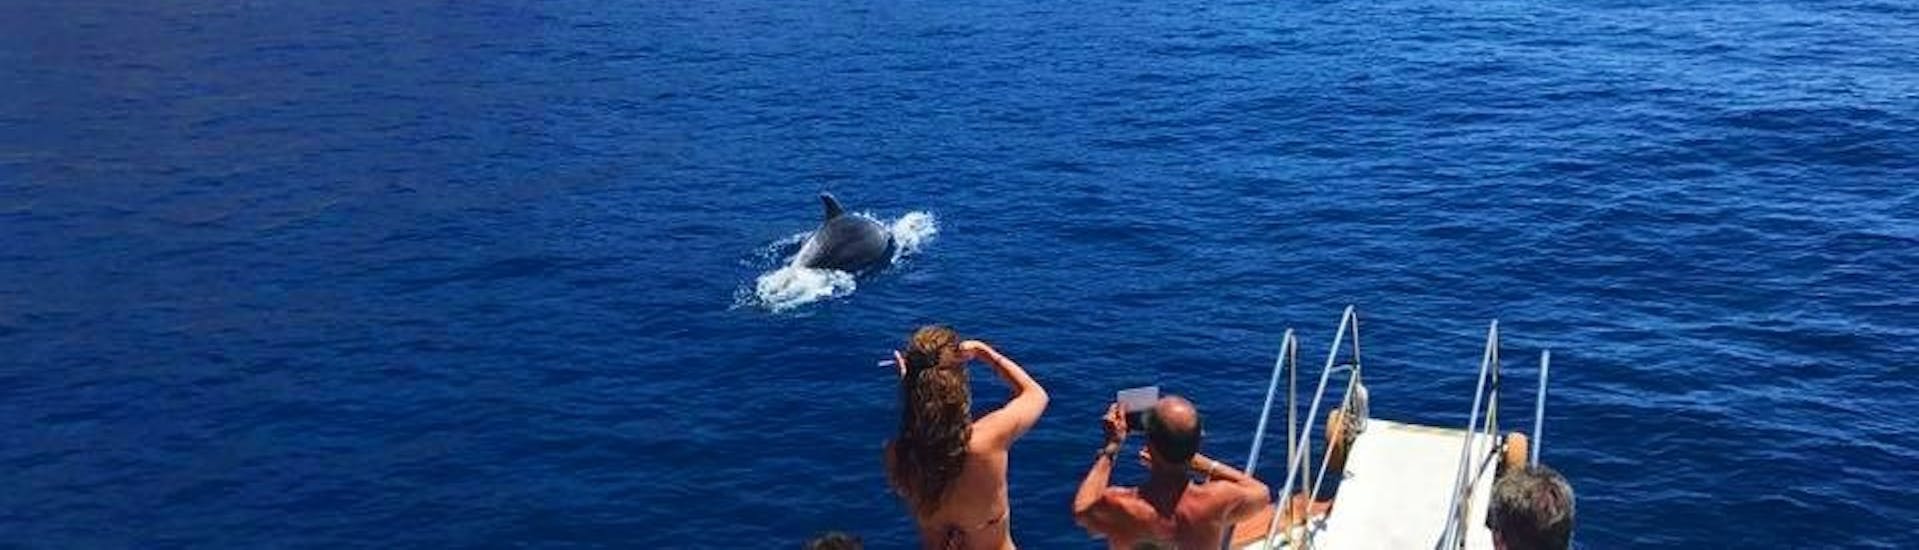 Delfinbeobachtung während einer Bootstour von Marina di Campo nach Sant'Andrea mit Delphinbeobachtung mit Baby Princess Elba.